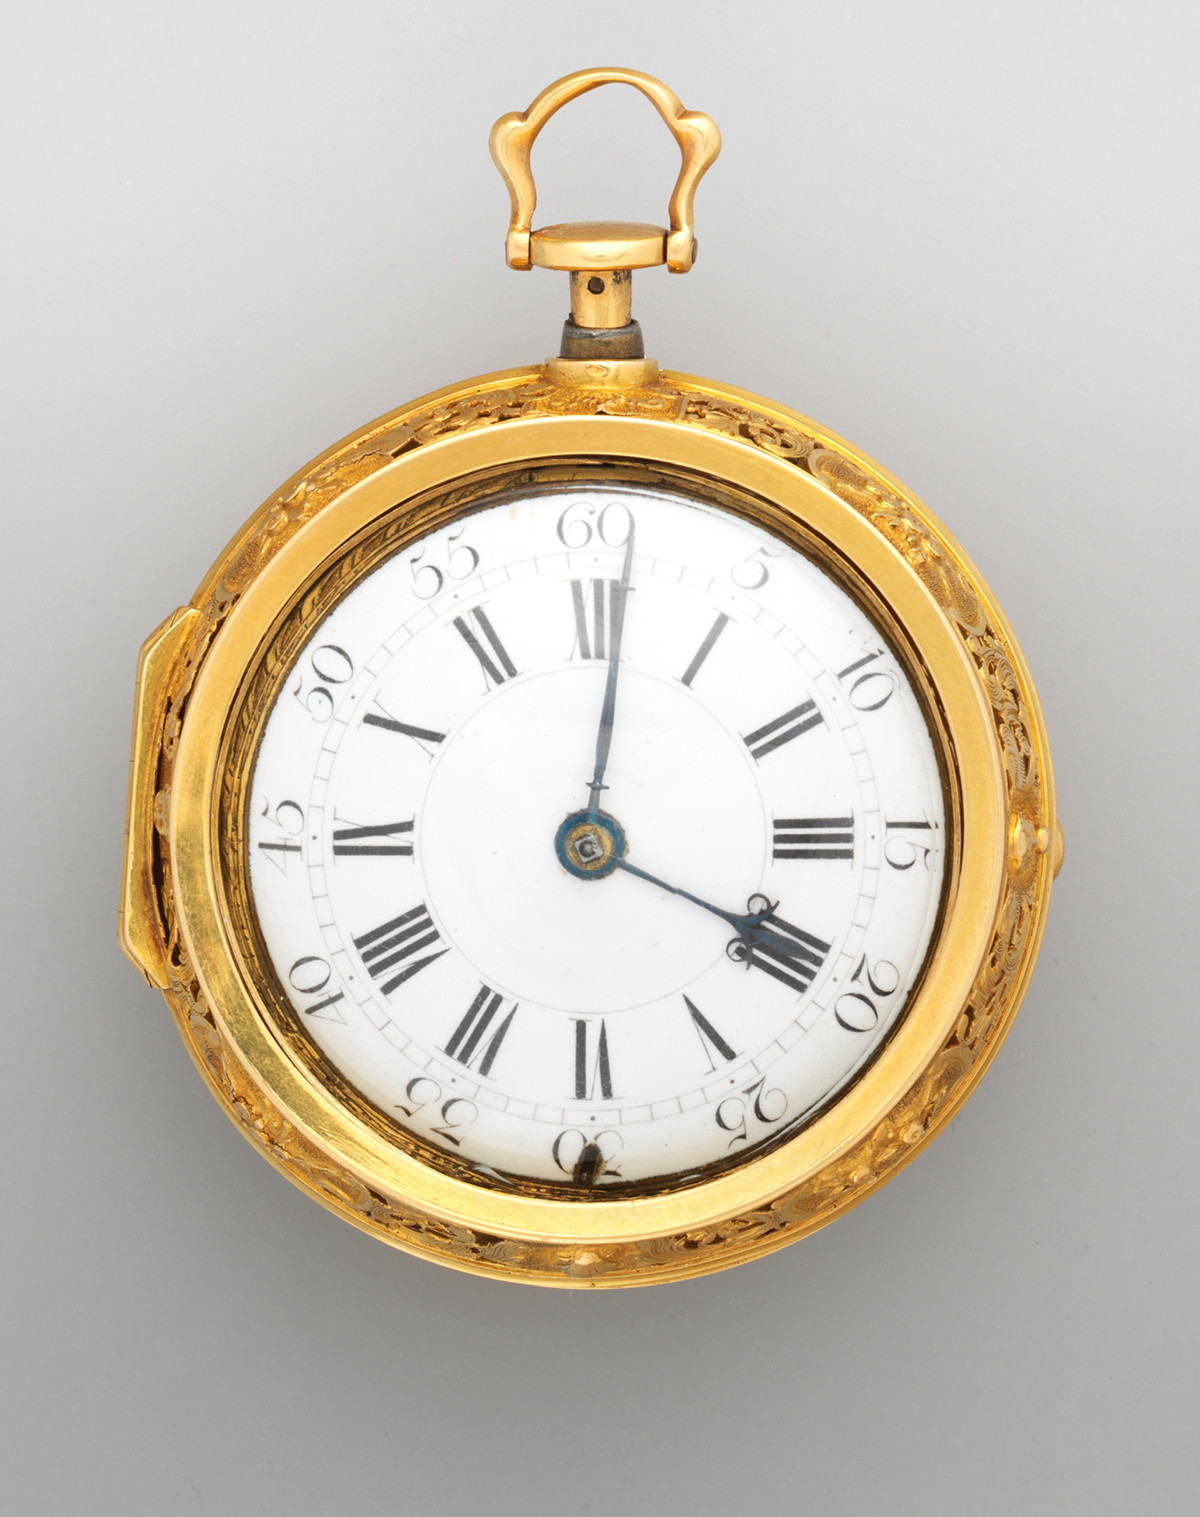 1740. Watch. British, London. Gold, enamel. metmuseum